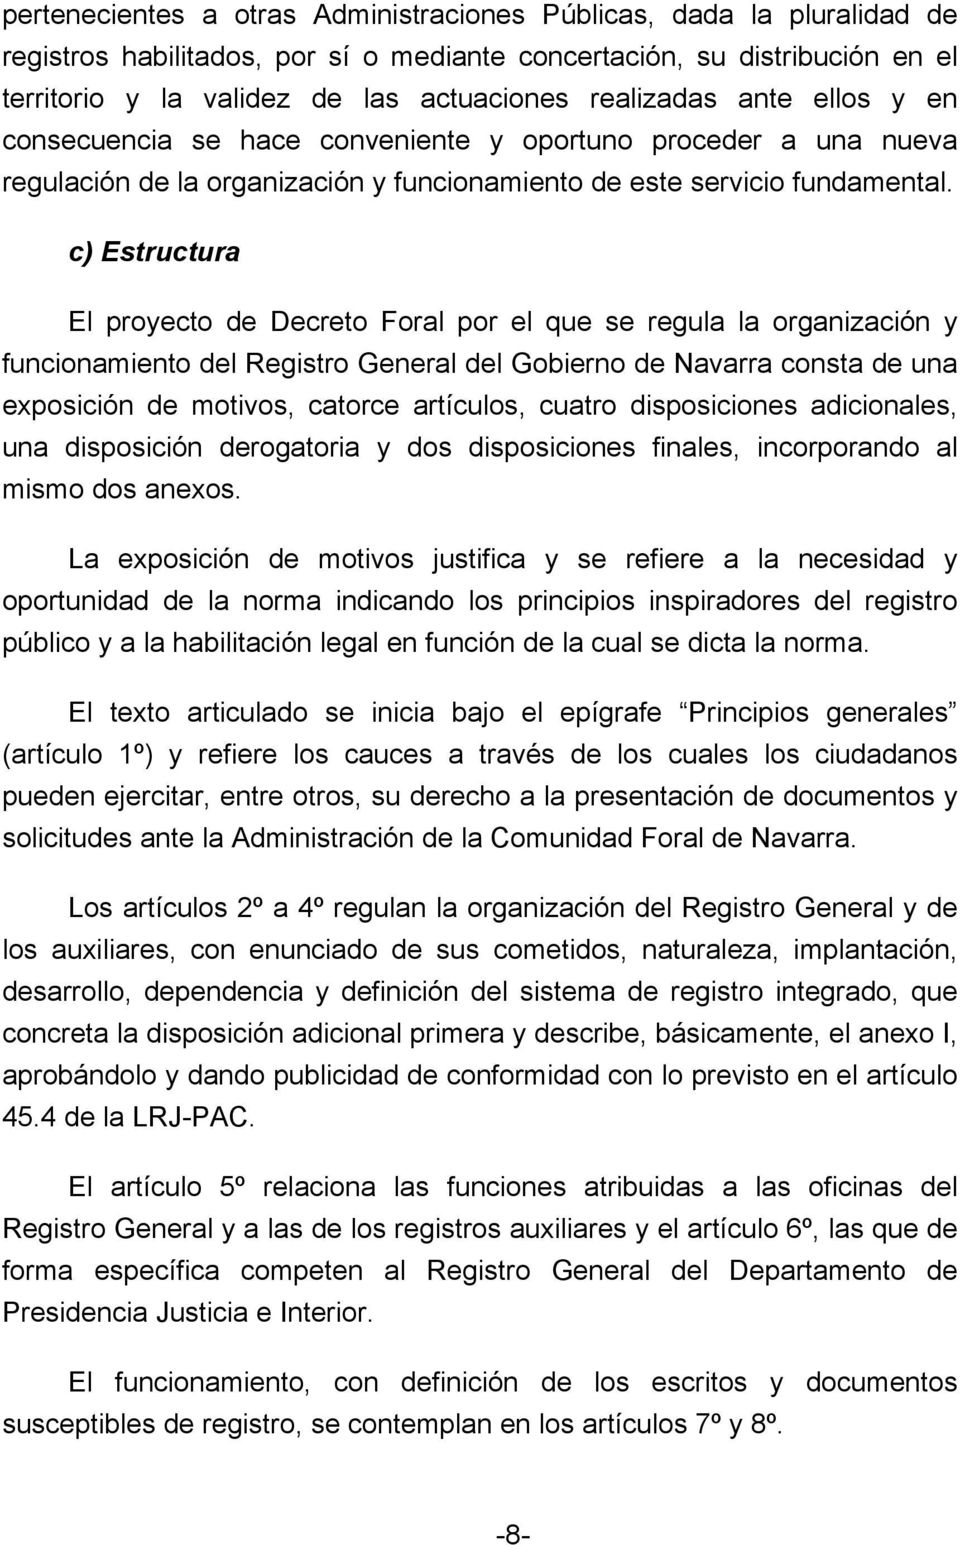 c) Estructura El proyecto de Decreto Foral por el que se regula la organización y funcionamiento del Registro General del Gobierno de Navarra consta de una exposición de motivos, catorce artículos,